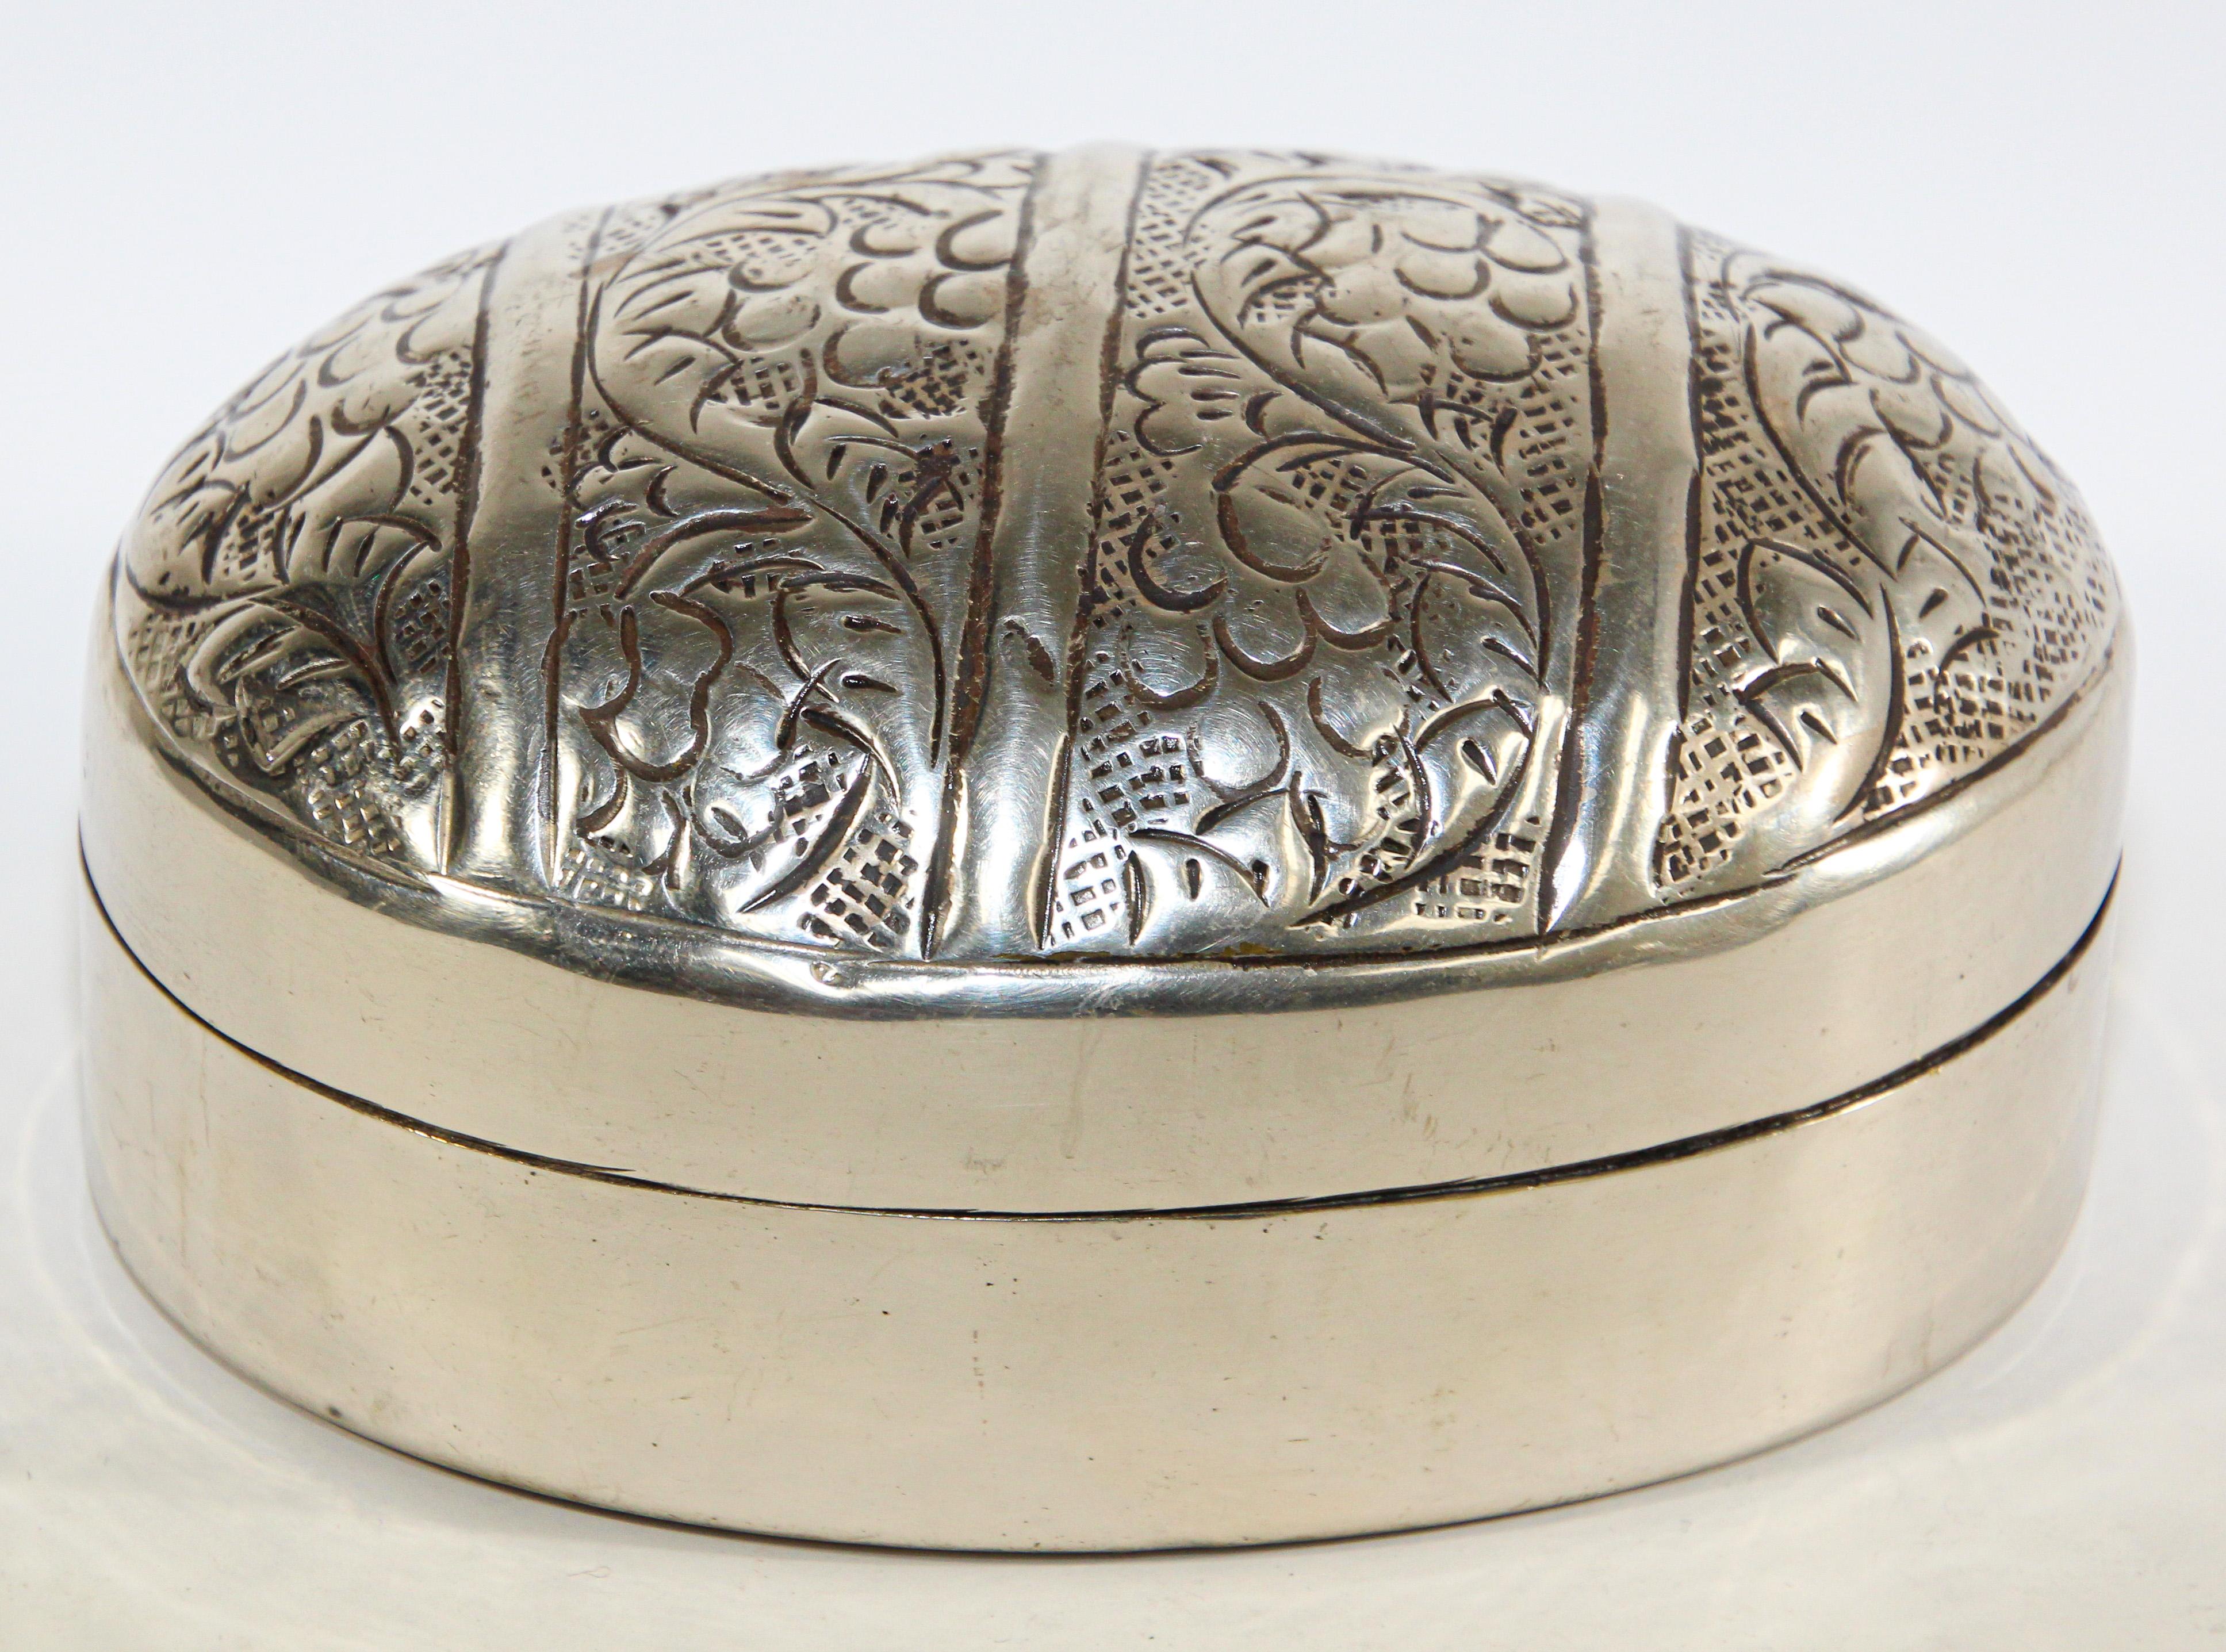 Boîte décorative asiatique à couvercle en métal argenté martelé et gravé de motifs floraux organiques.
Boîte à bétel de forme ovale de style Anglo Raj.
Dimensions : 5